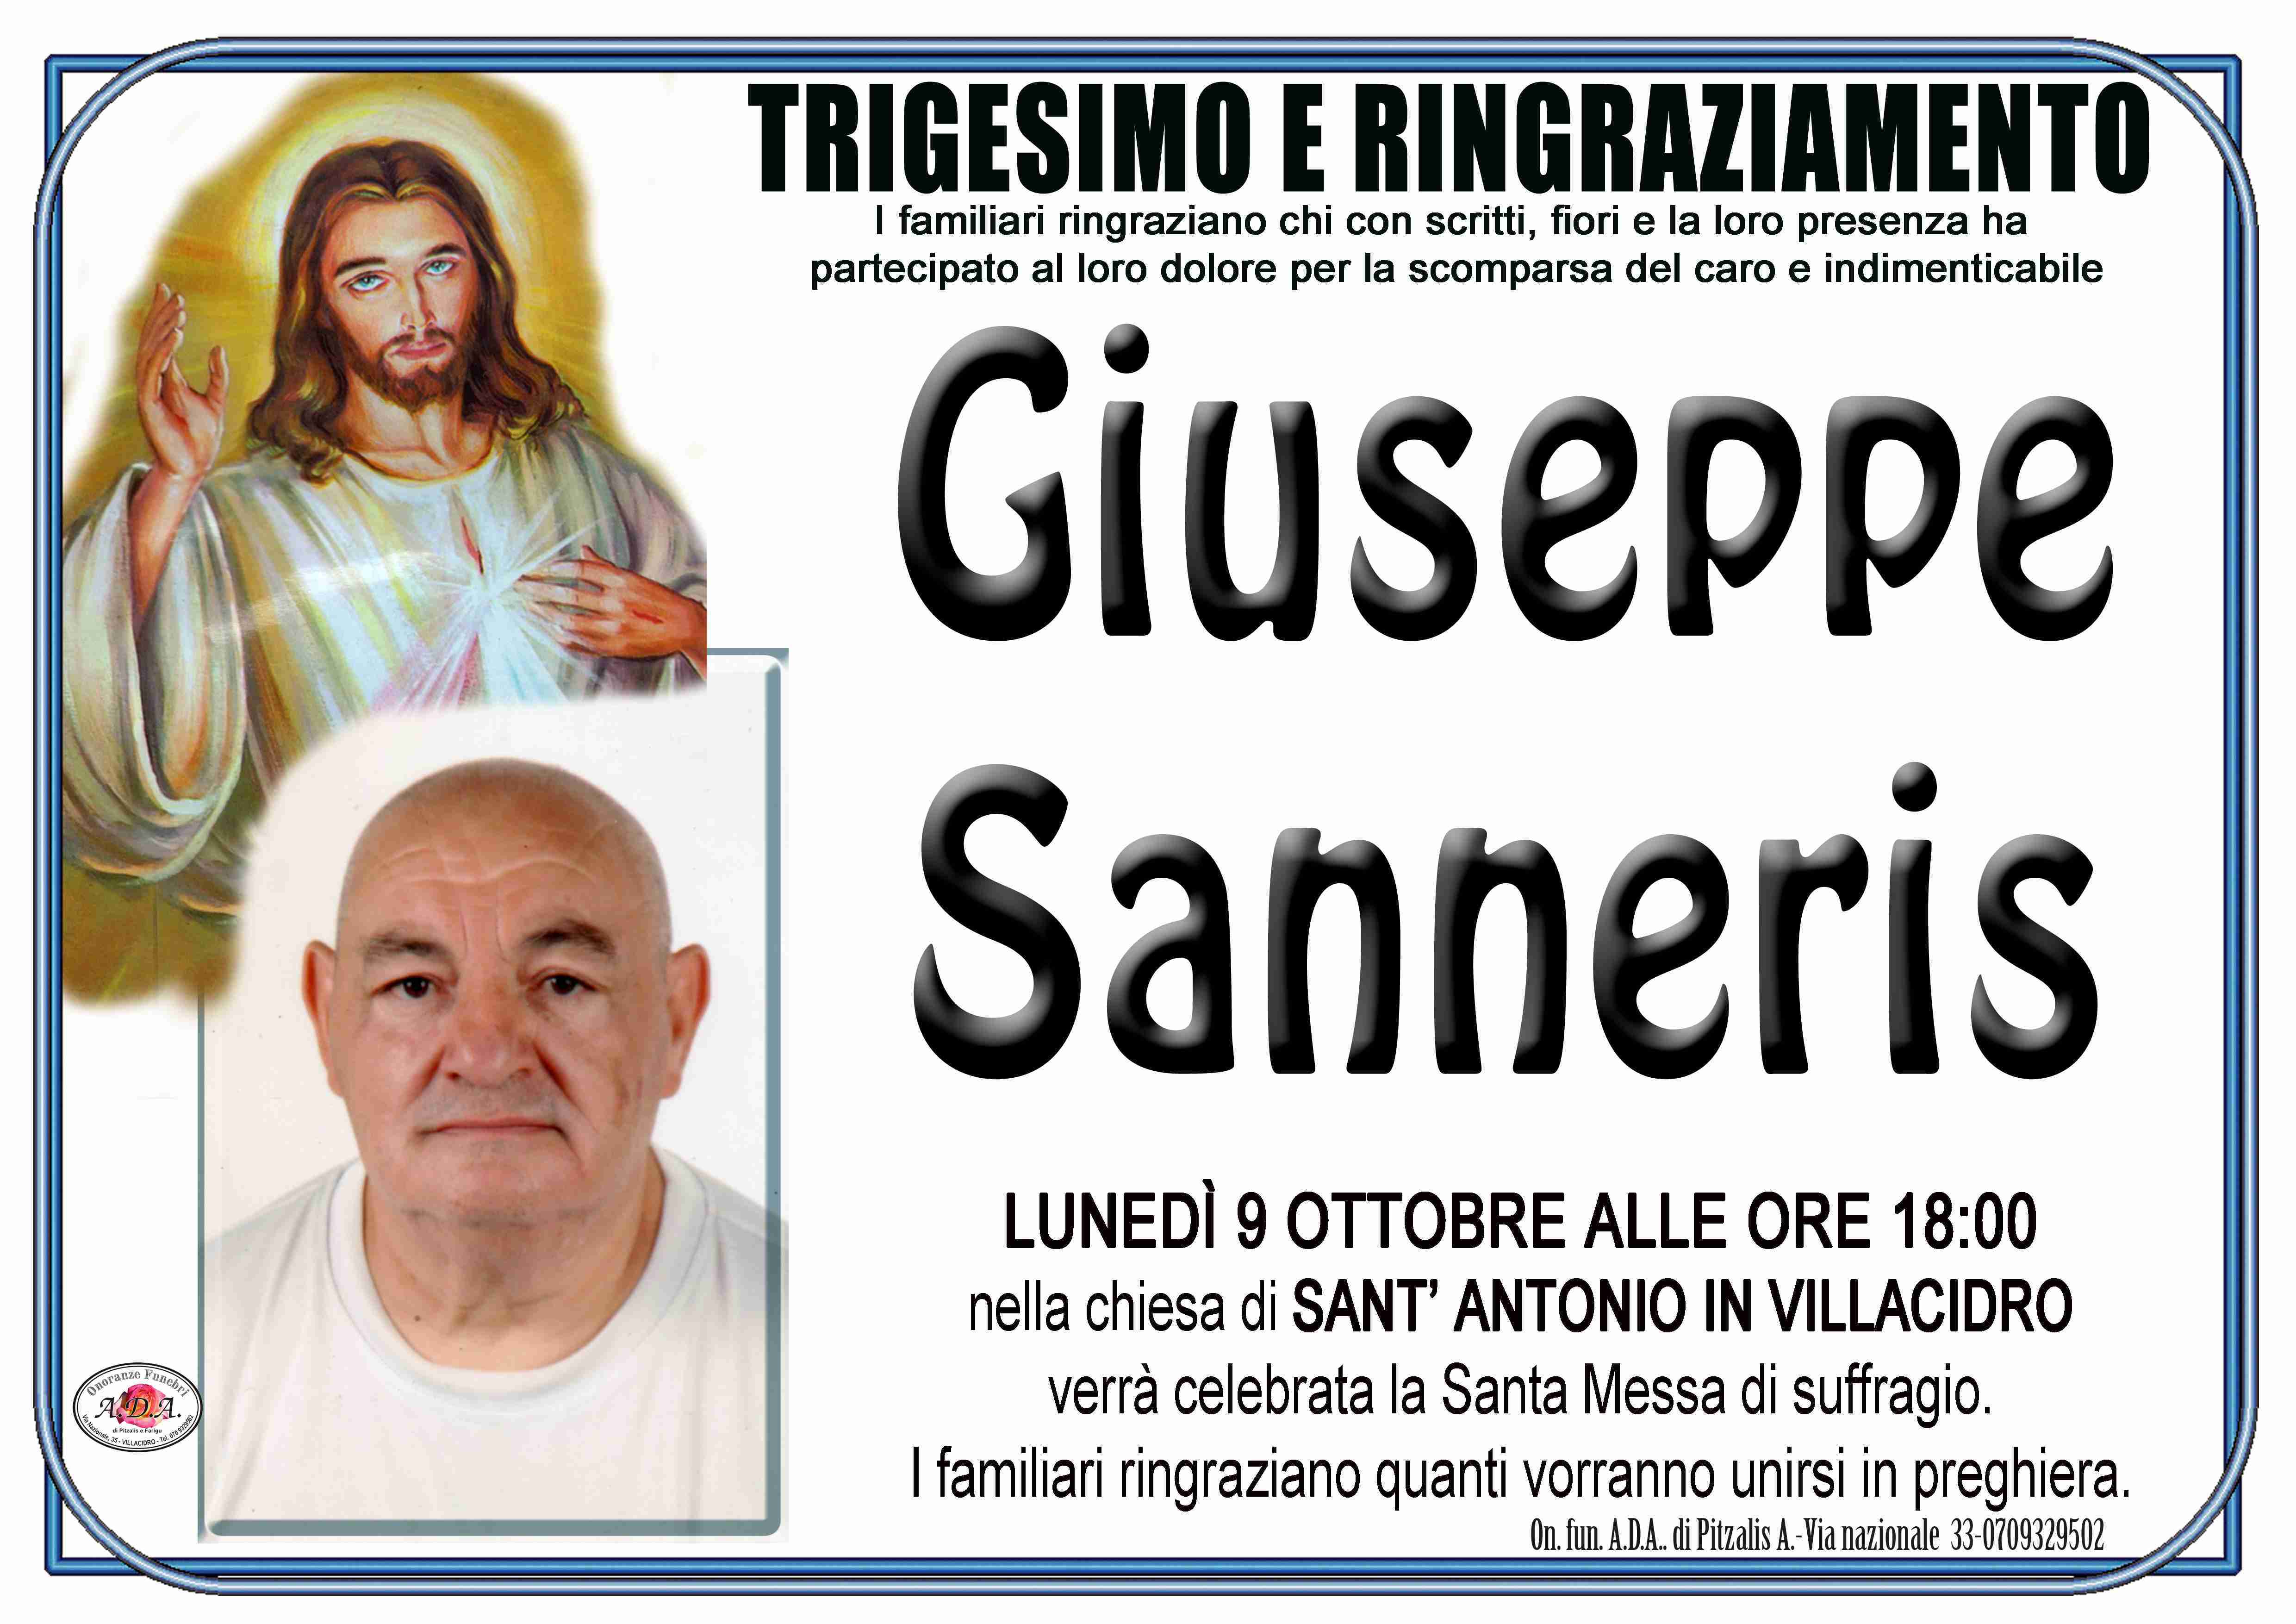 Giuseppe Sanneris